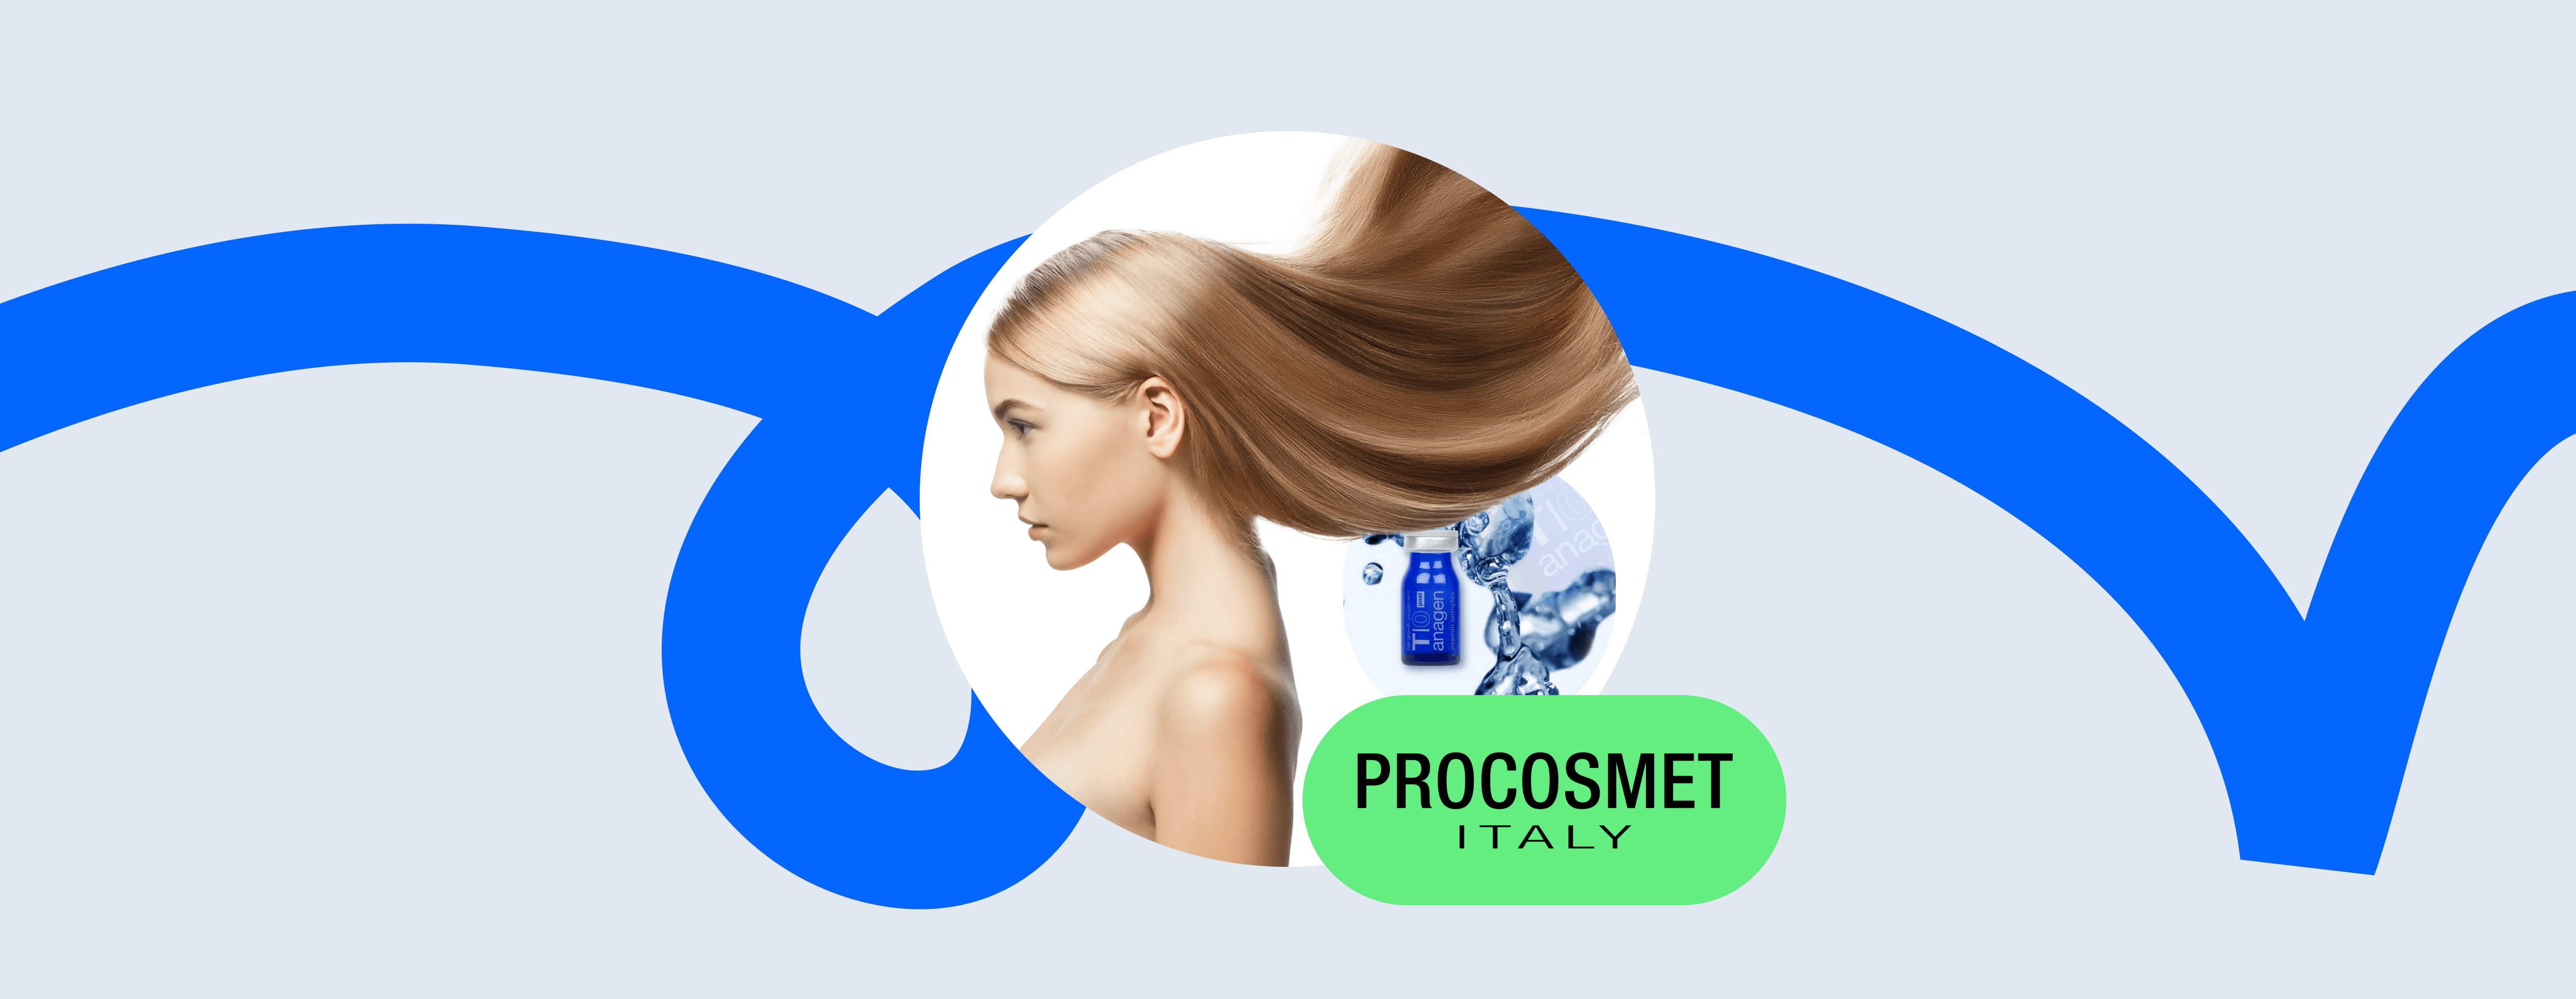 procosmet cover image